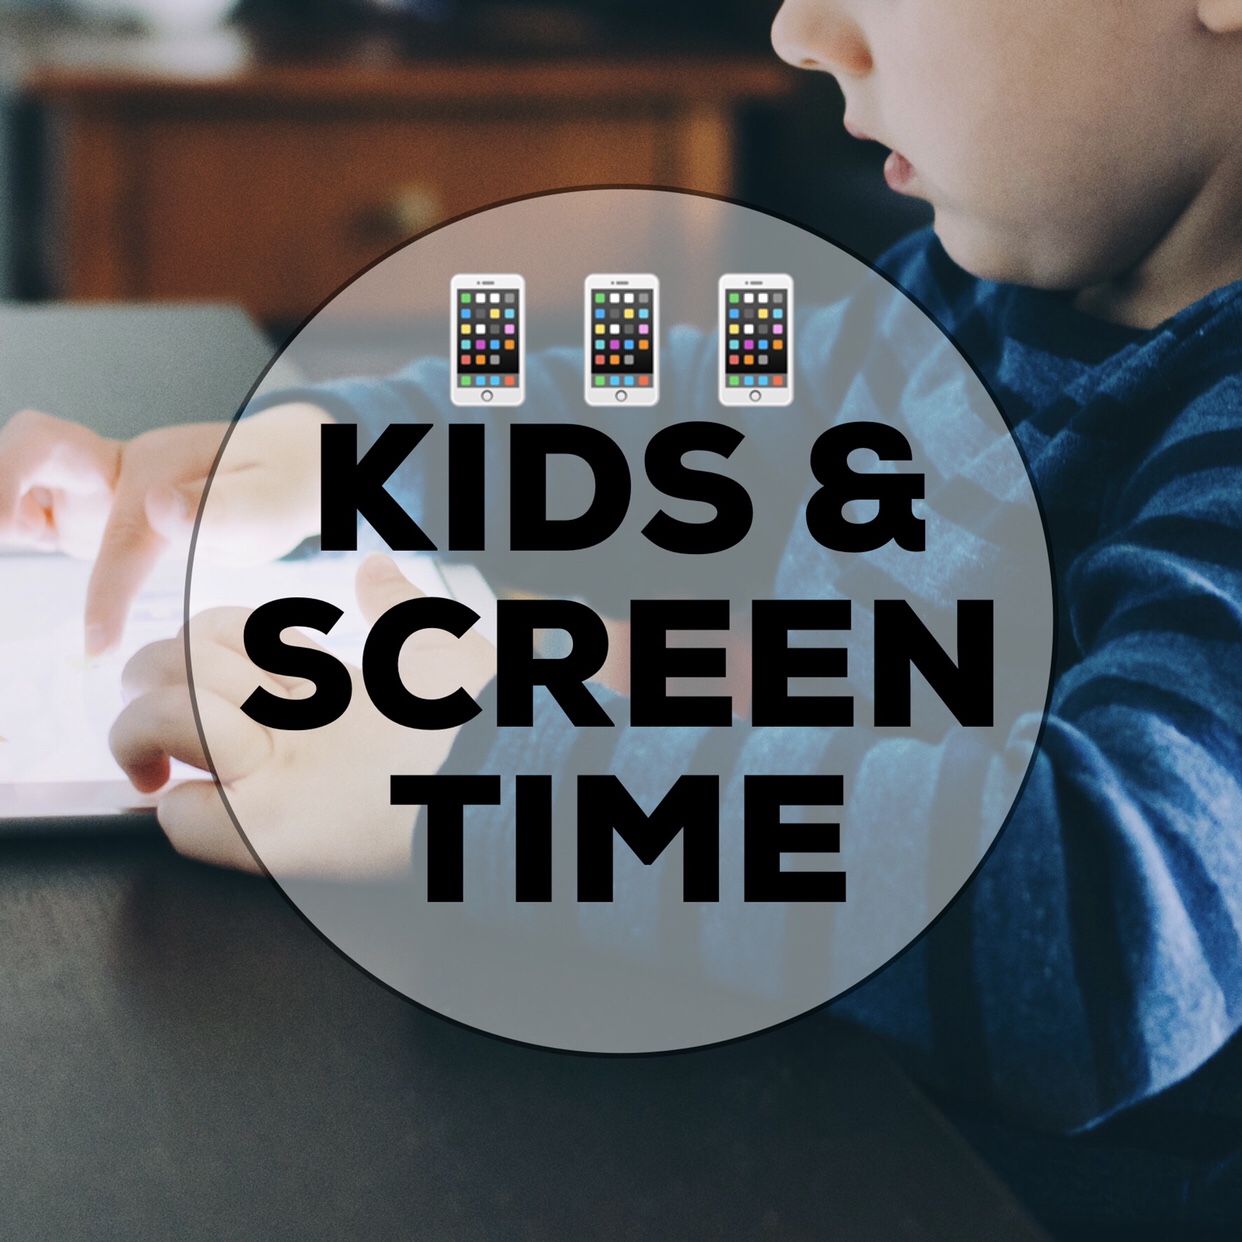 Managing Kids & Screen Time